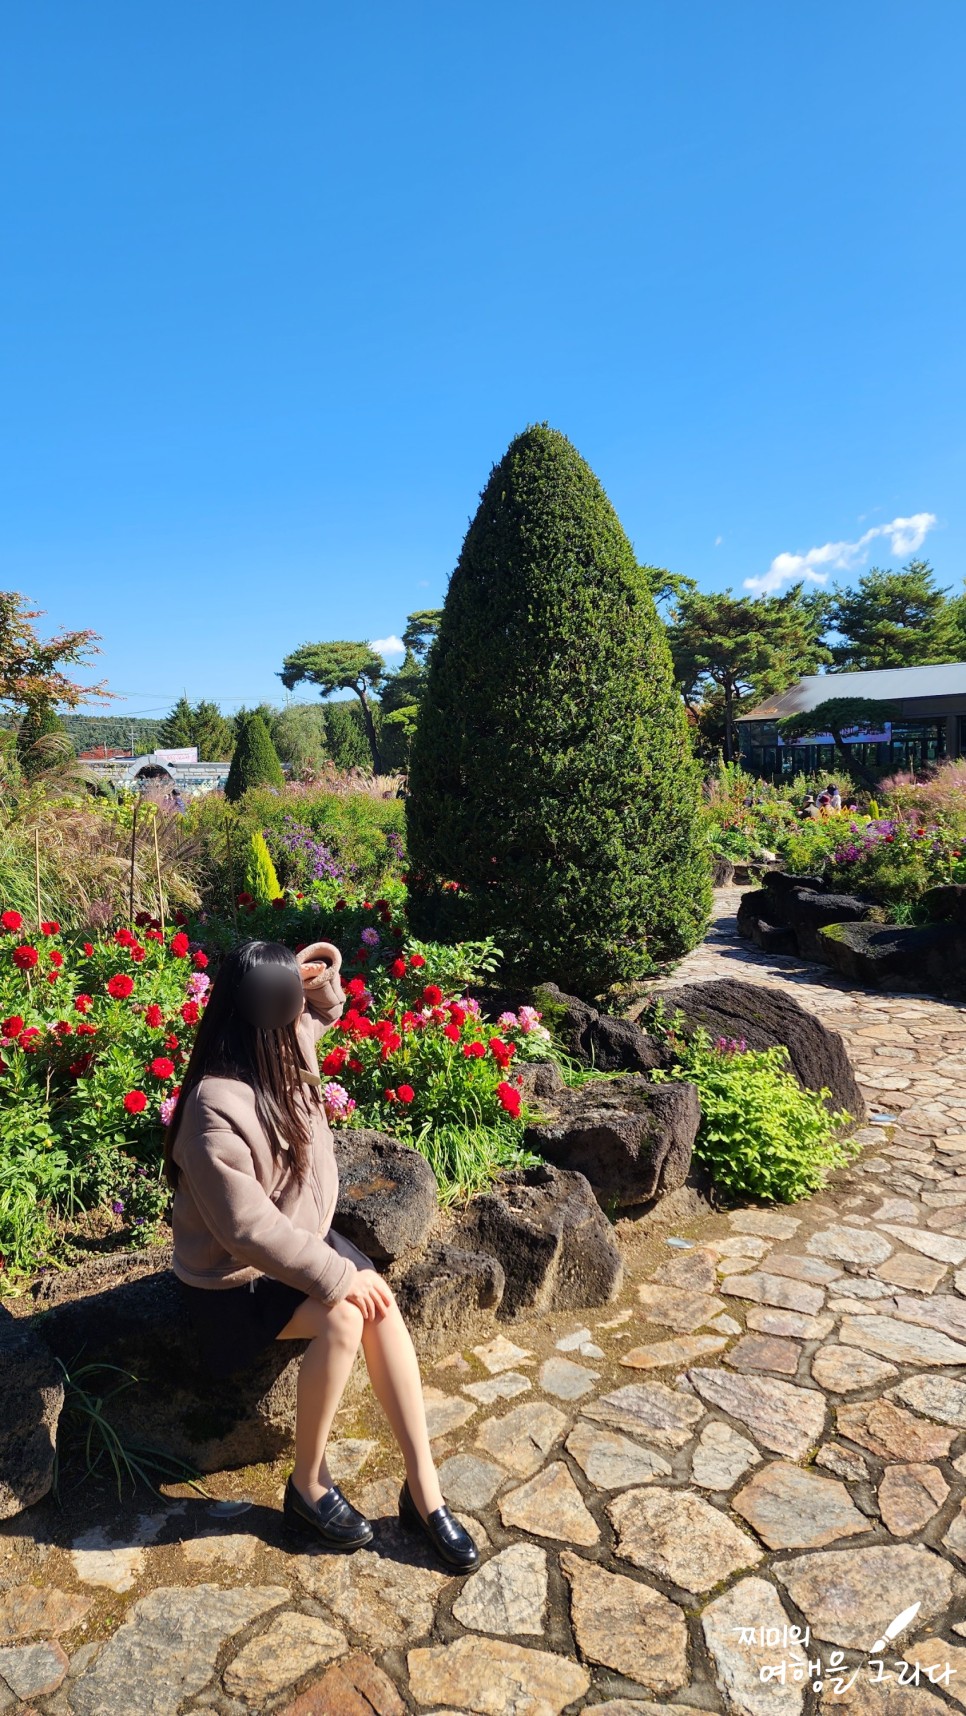 파주 벽초지수목원 가을꽃 국화축제 경기도 식물원 데이트 나들이 볼거리